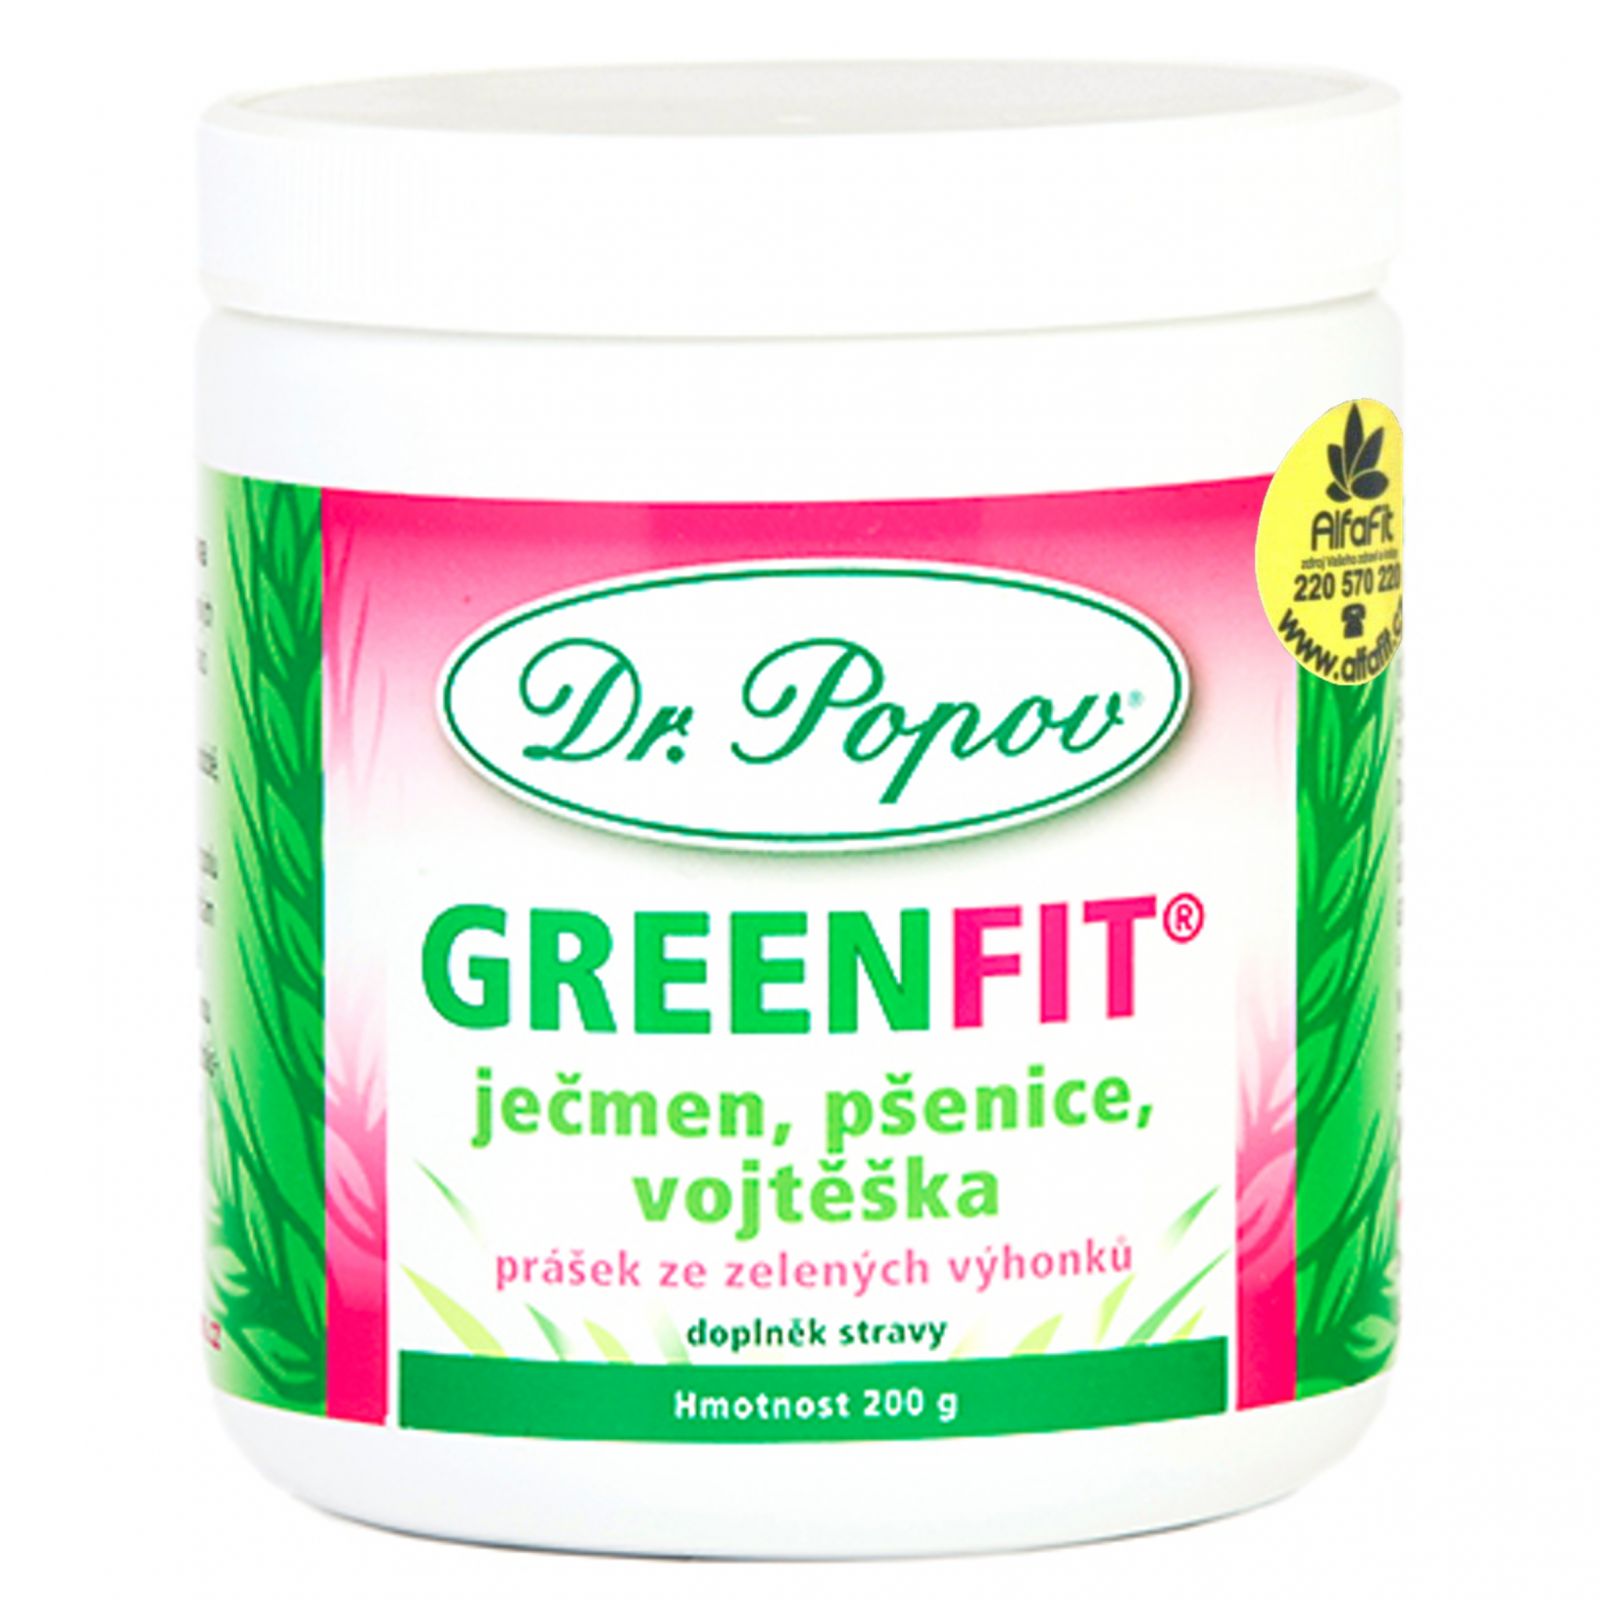 Dr. popov GreenFit prášek ze zelených výhonků 200 g